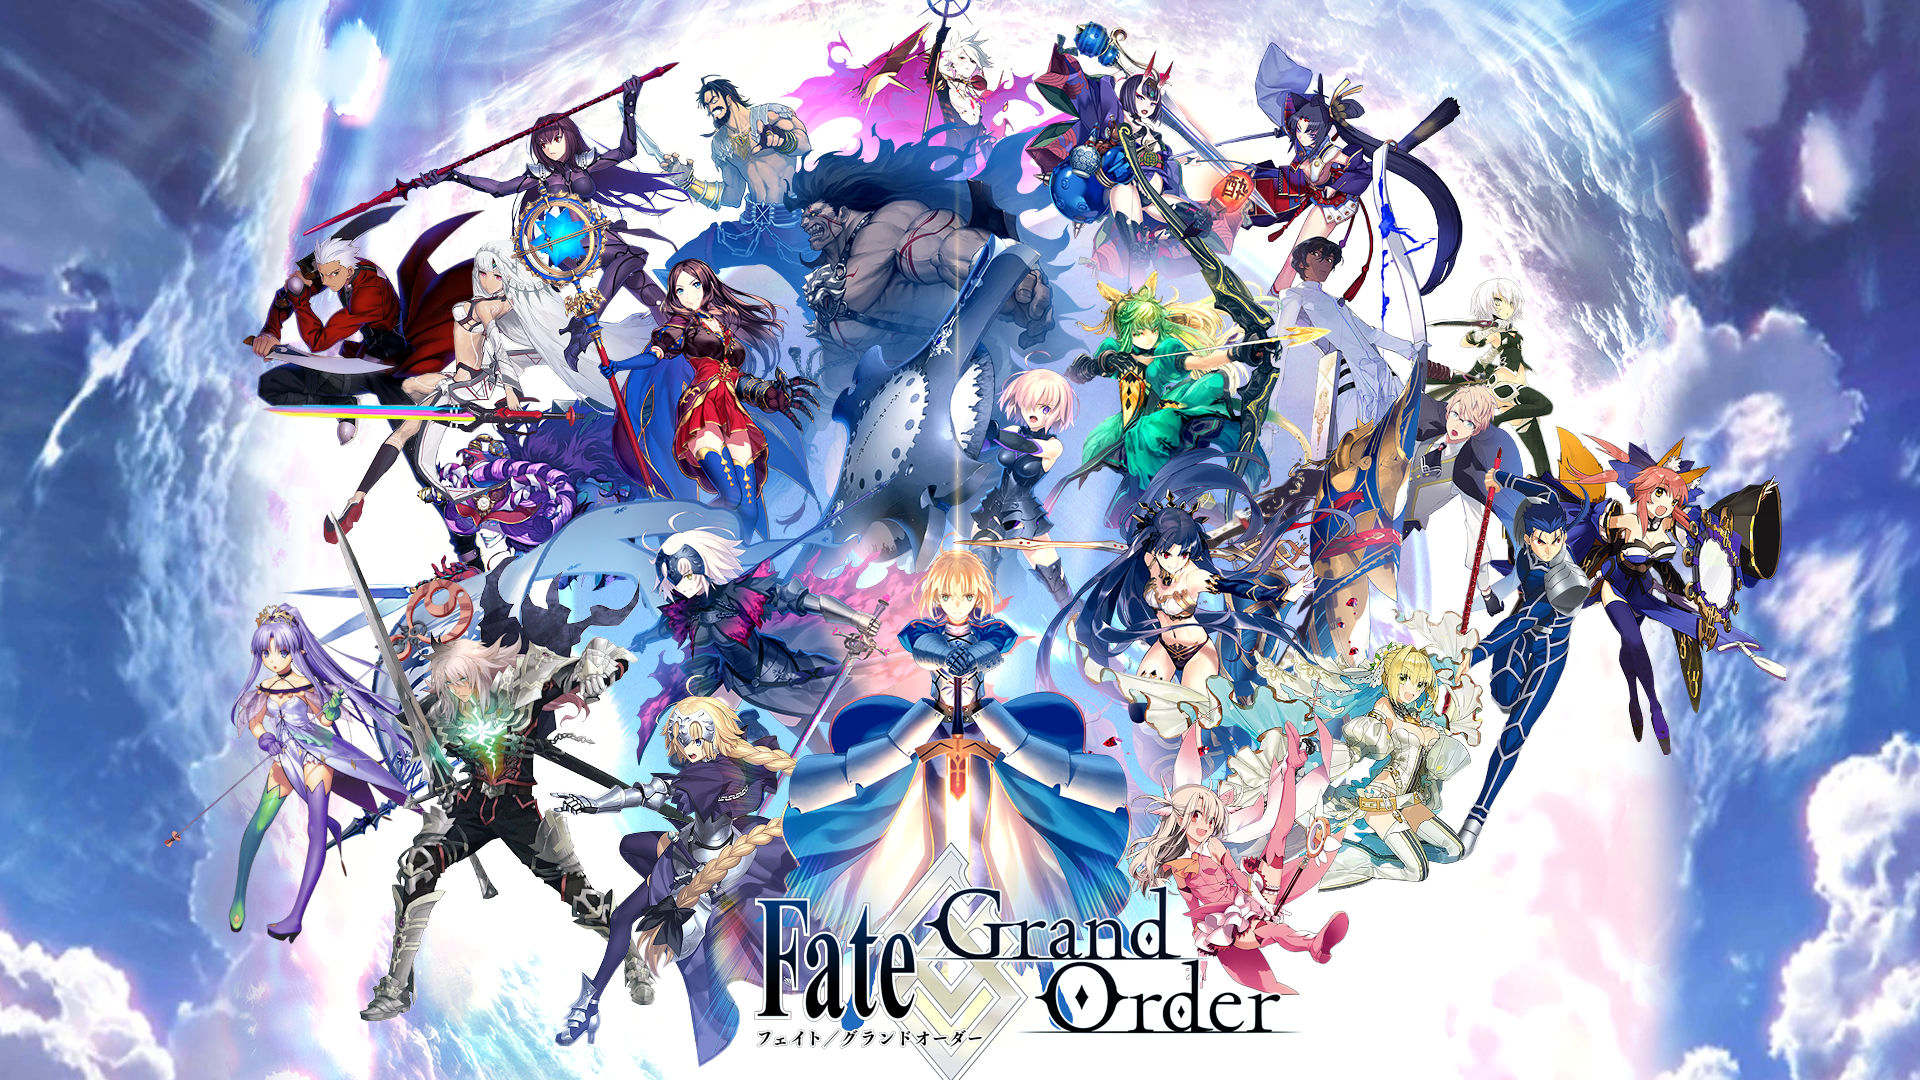 Fate Grand Order 雑談スレッド144 でもにっしょんch